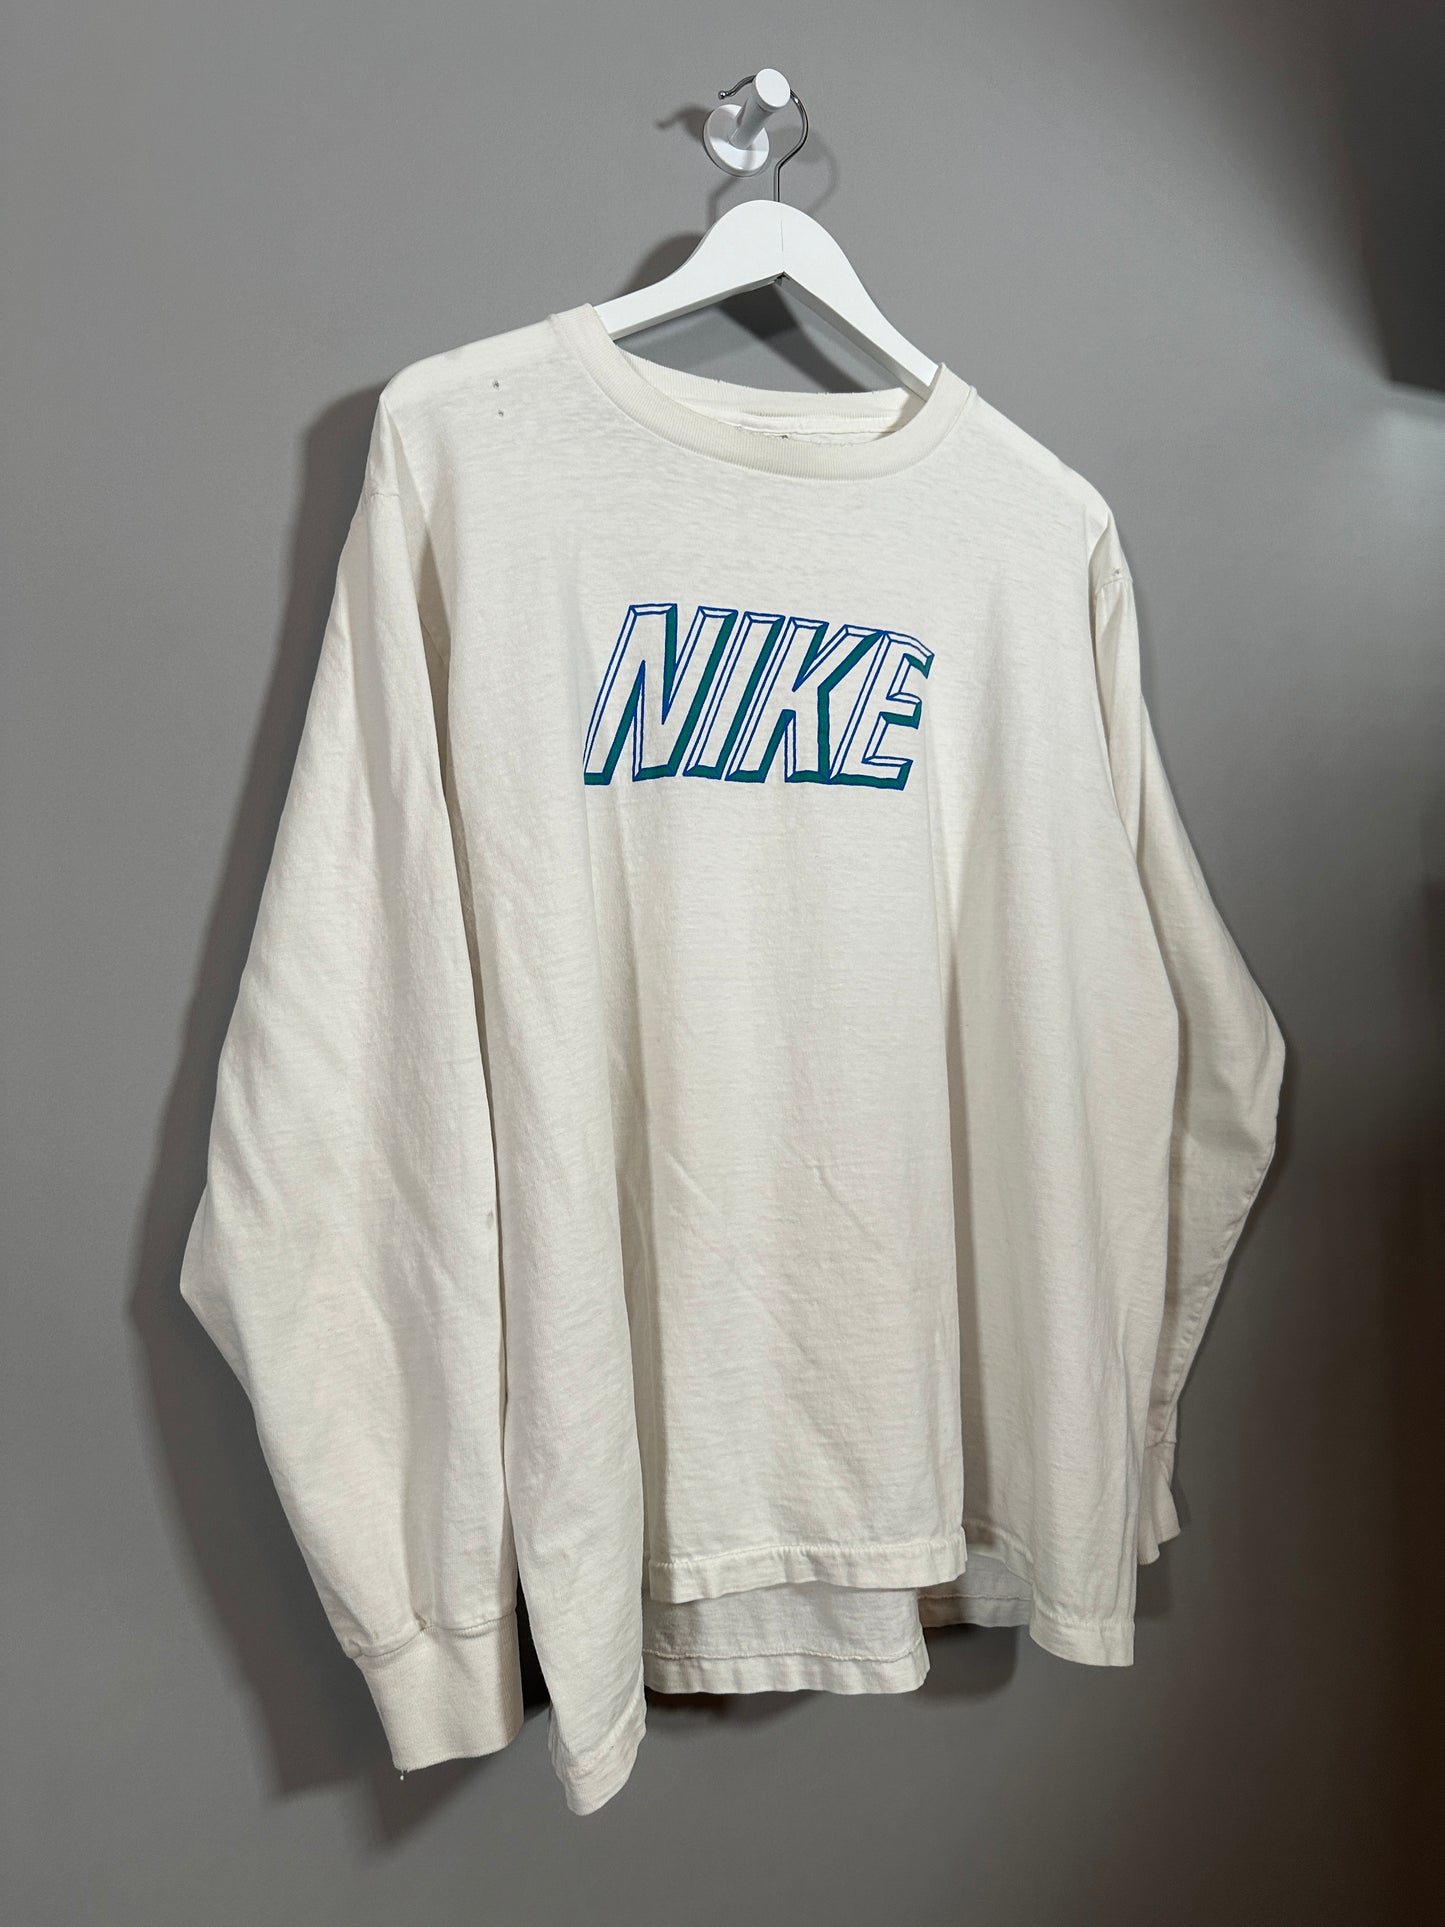 90s Nike T Shirt - L